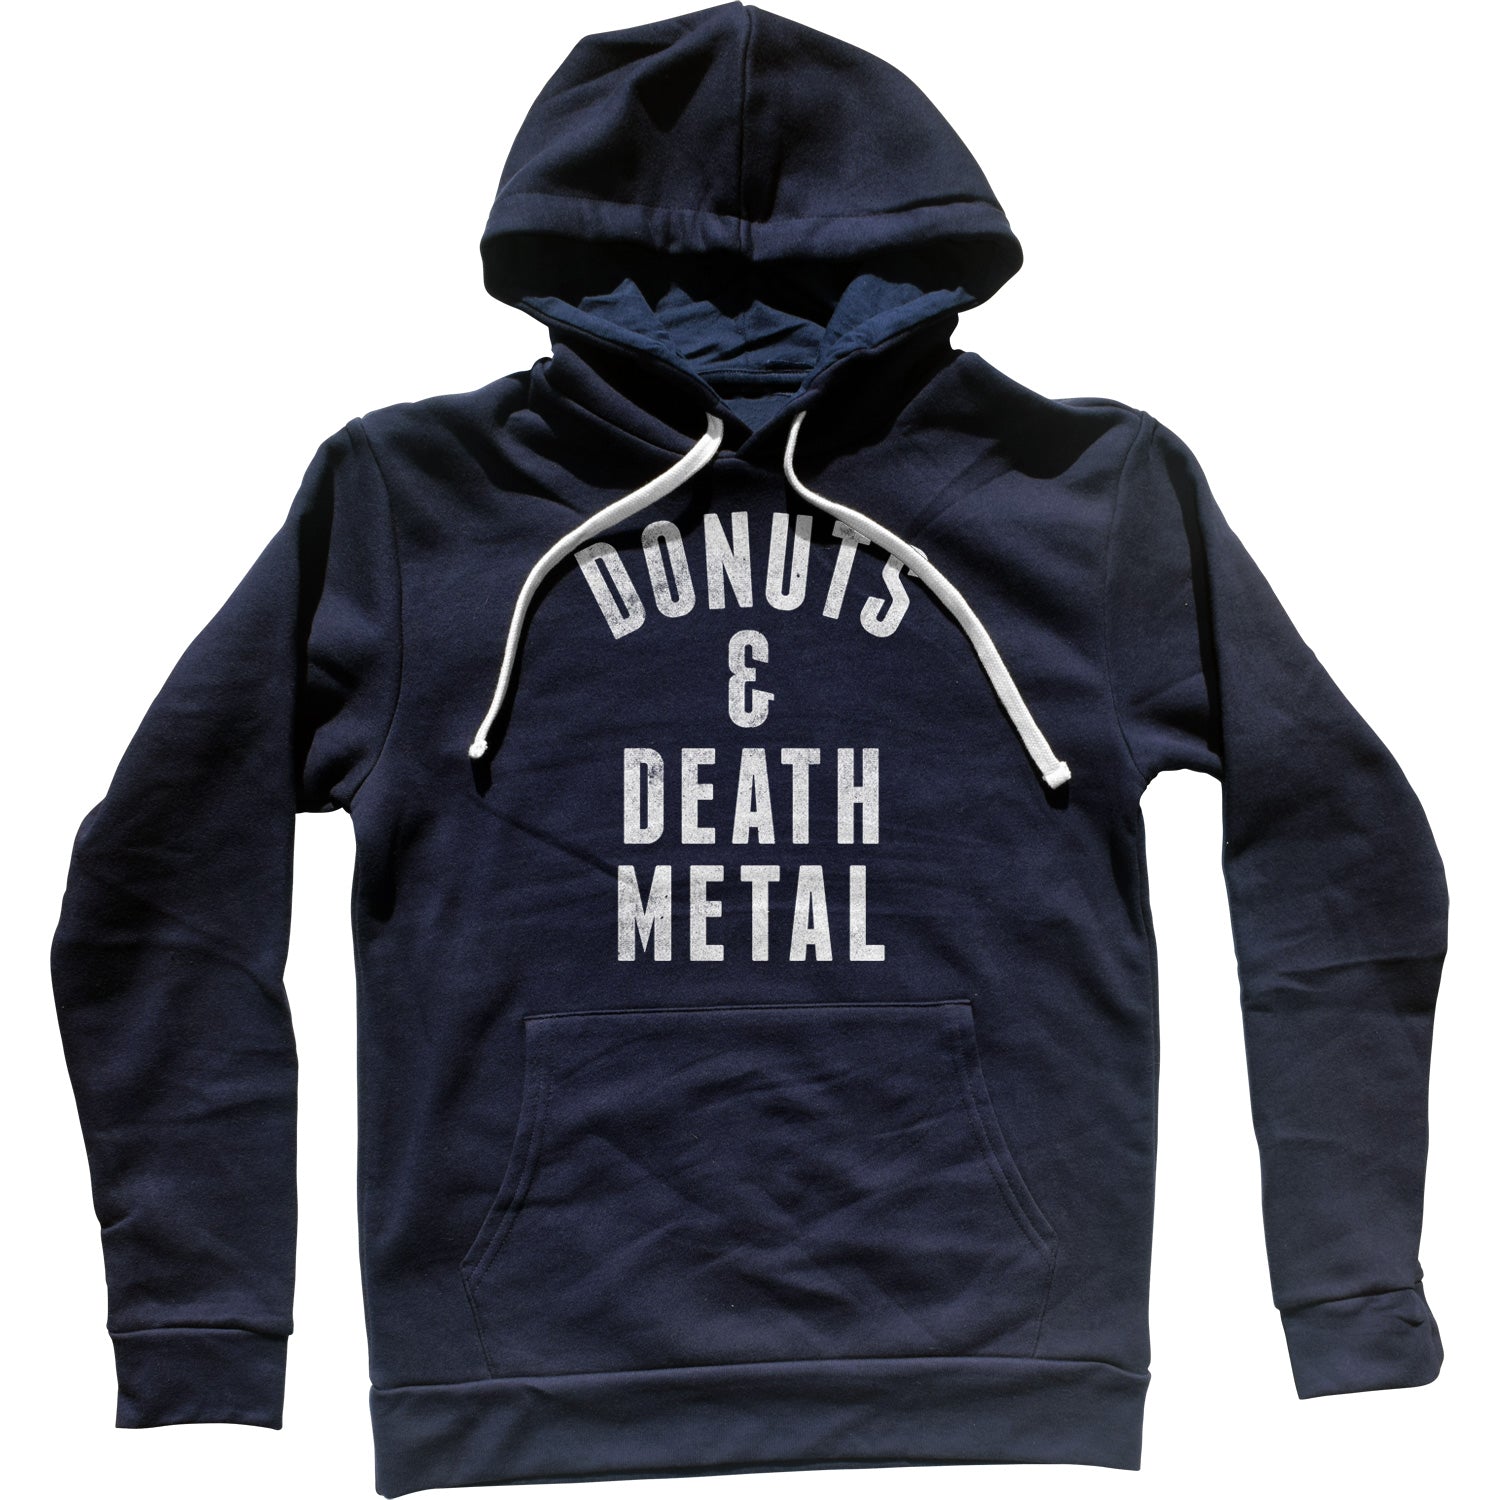 Donuts and Death Metal Unisex Hoodie